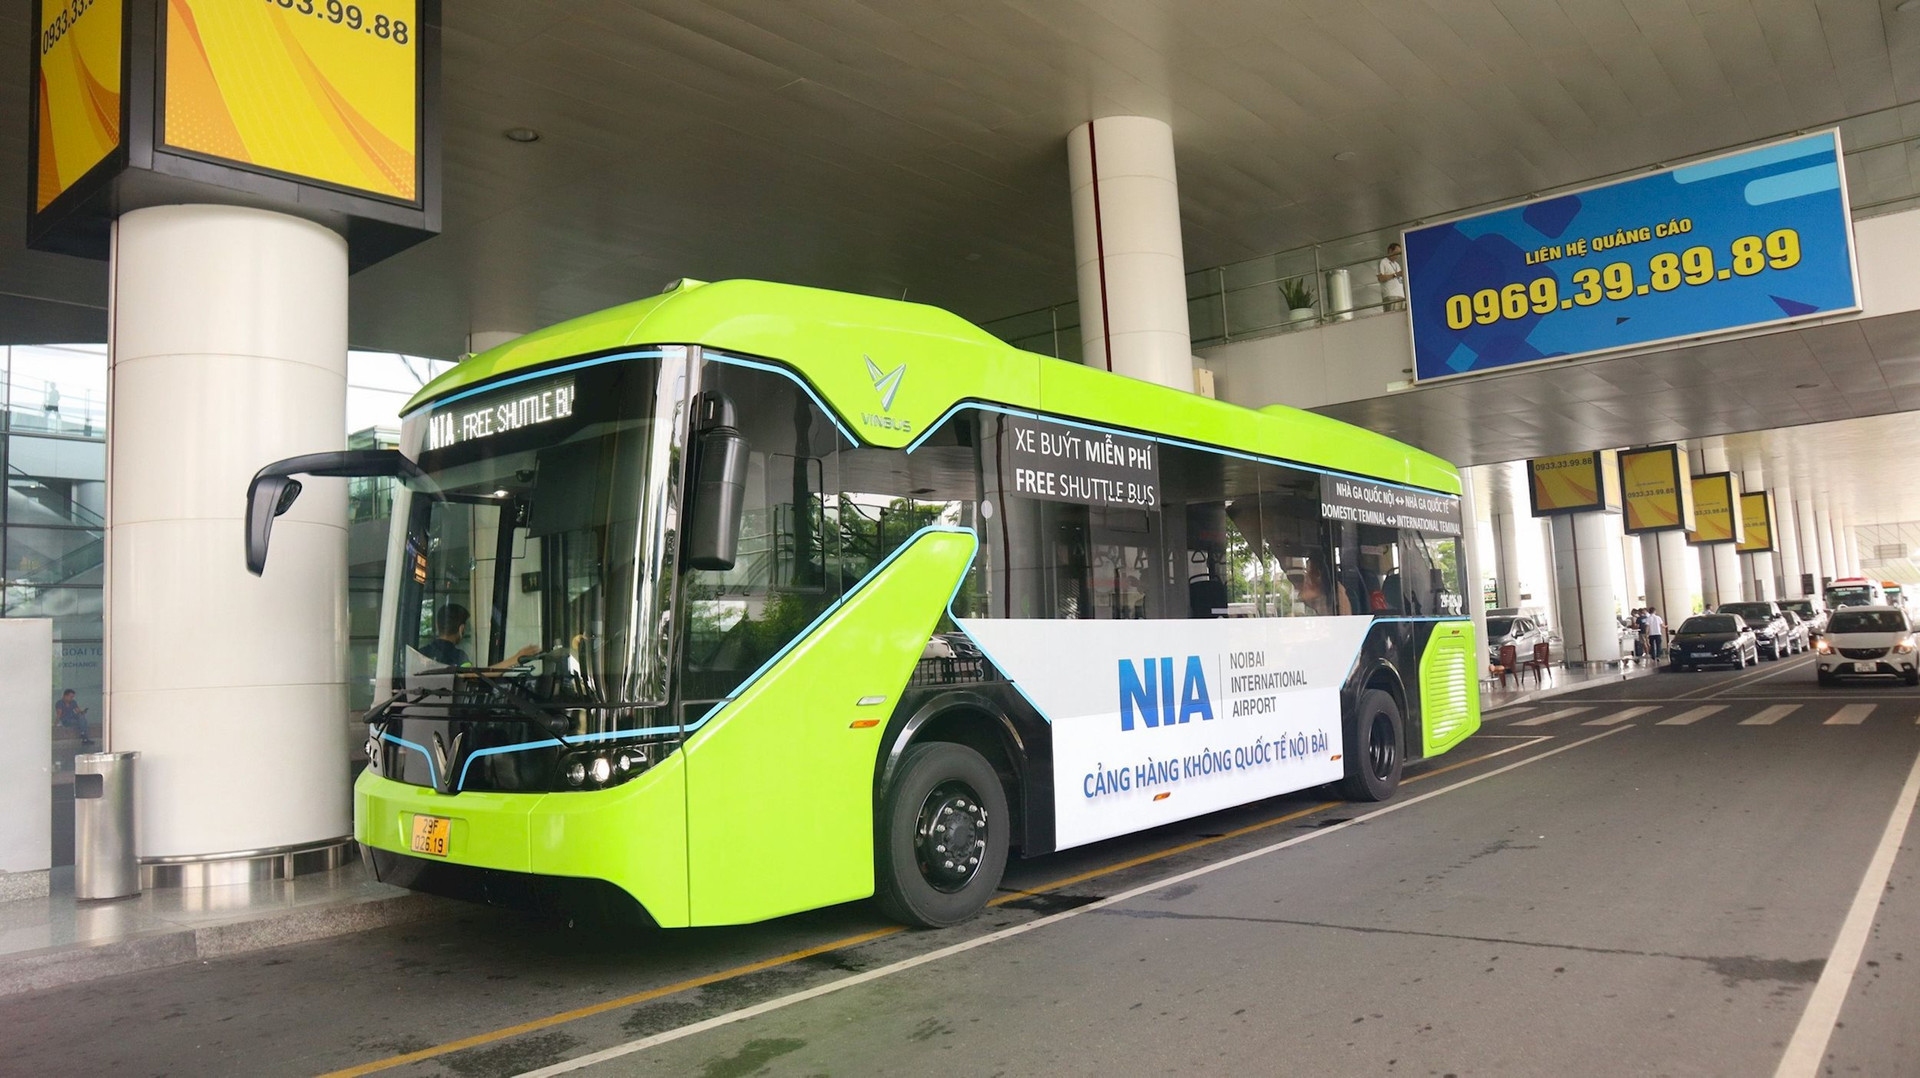 Sân bay Nội Bài lần đầu sử dụng xe bus điện - Ảnh 1.